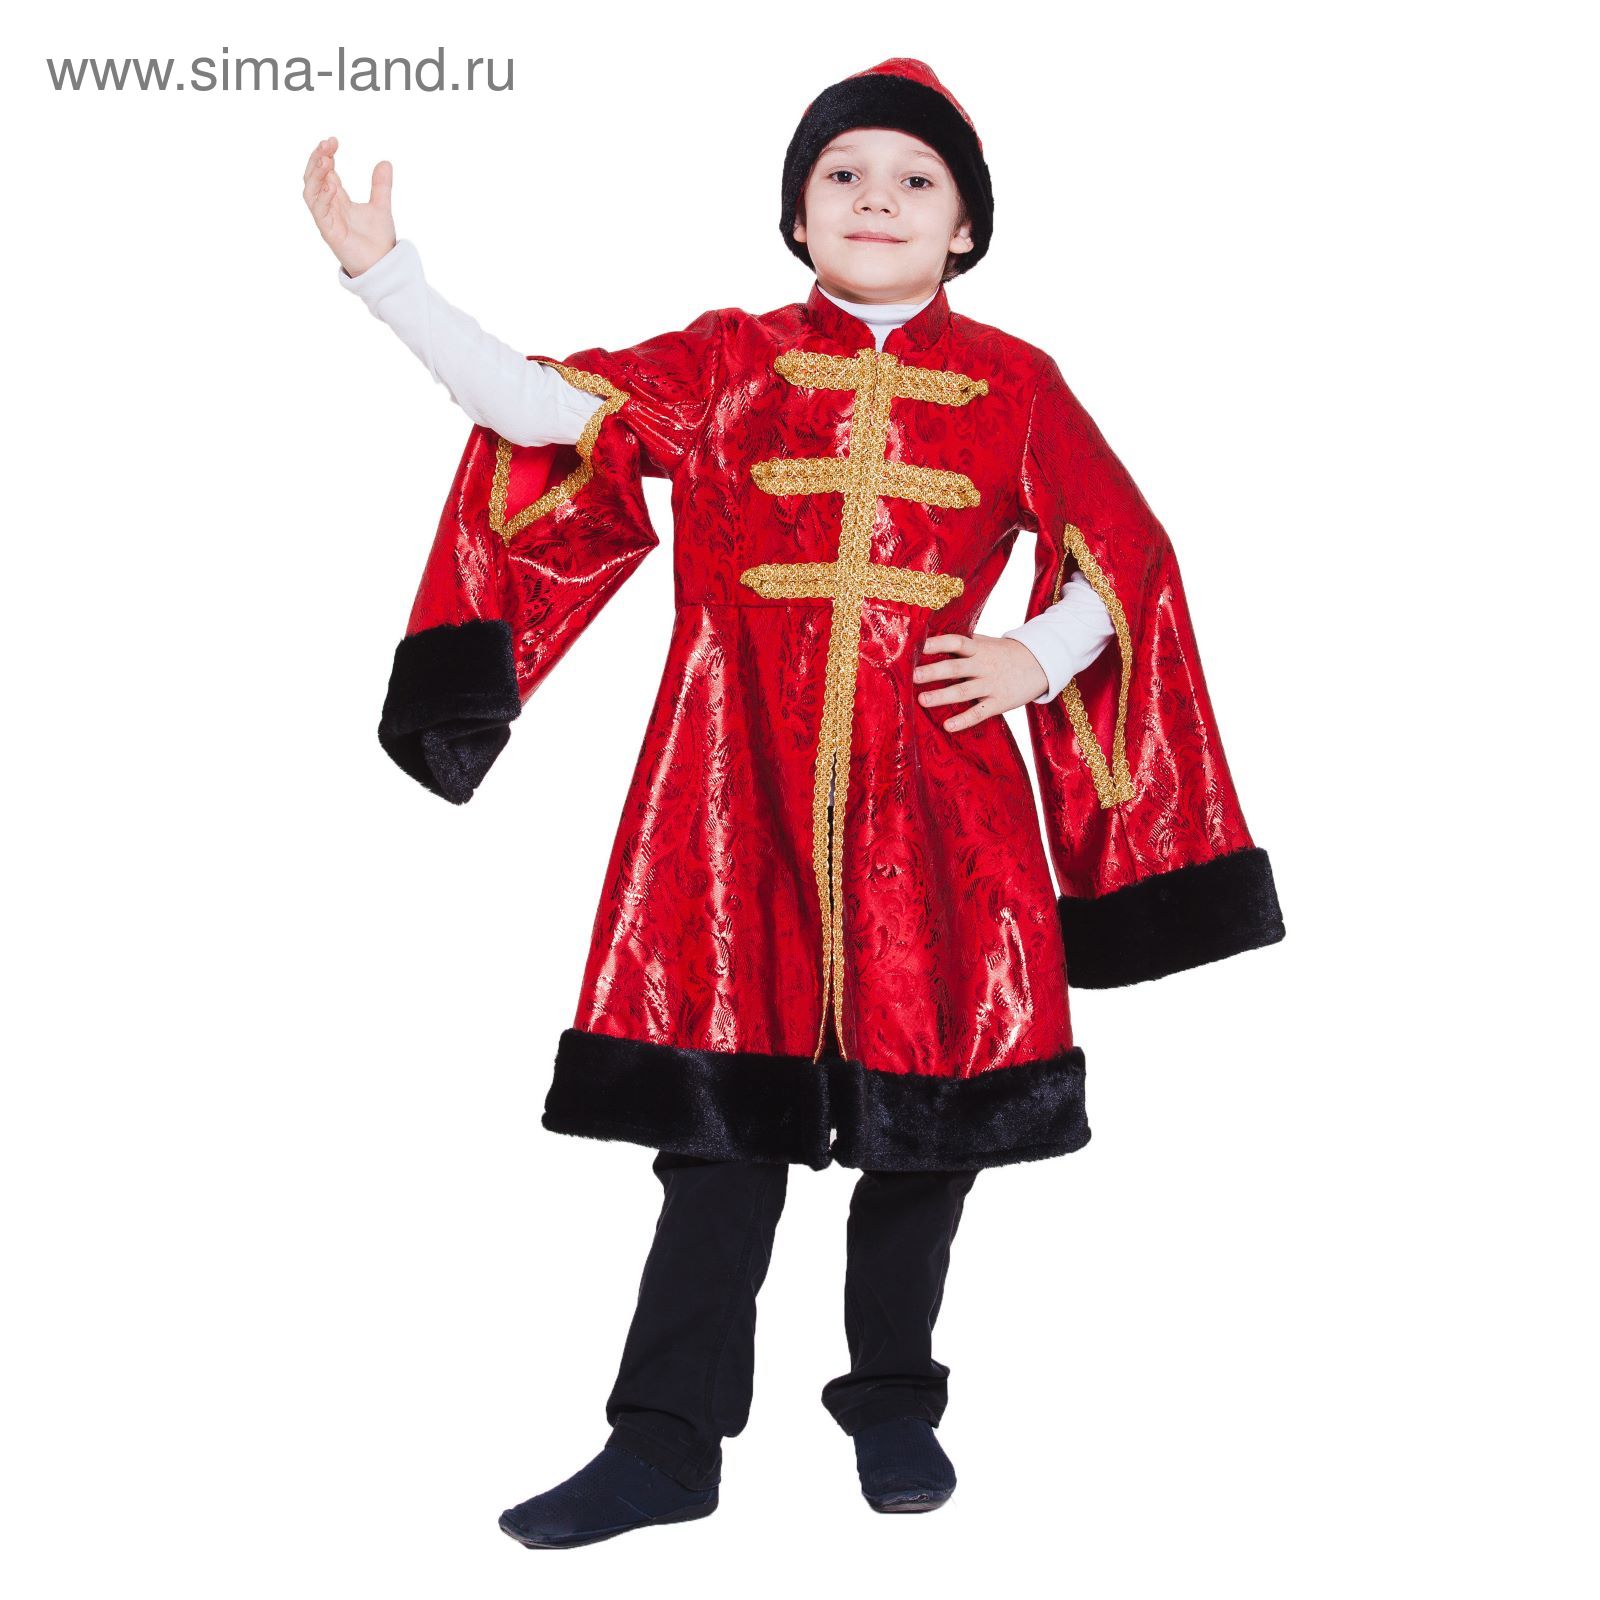 Карнавальный костюм для мужчин Боярин купить недорого